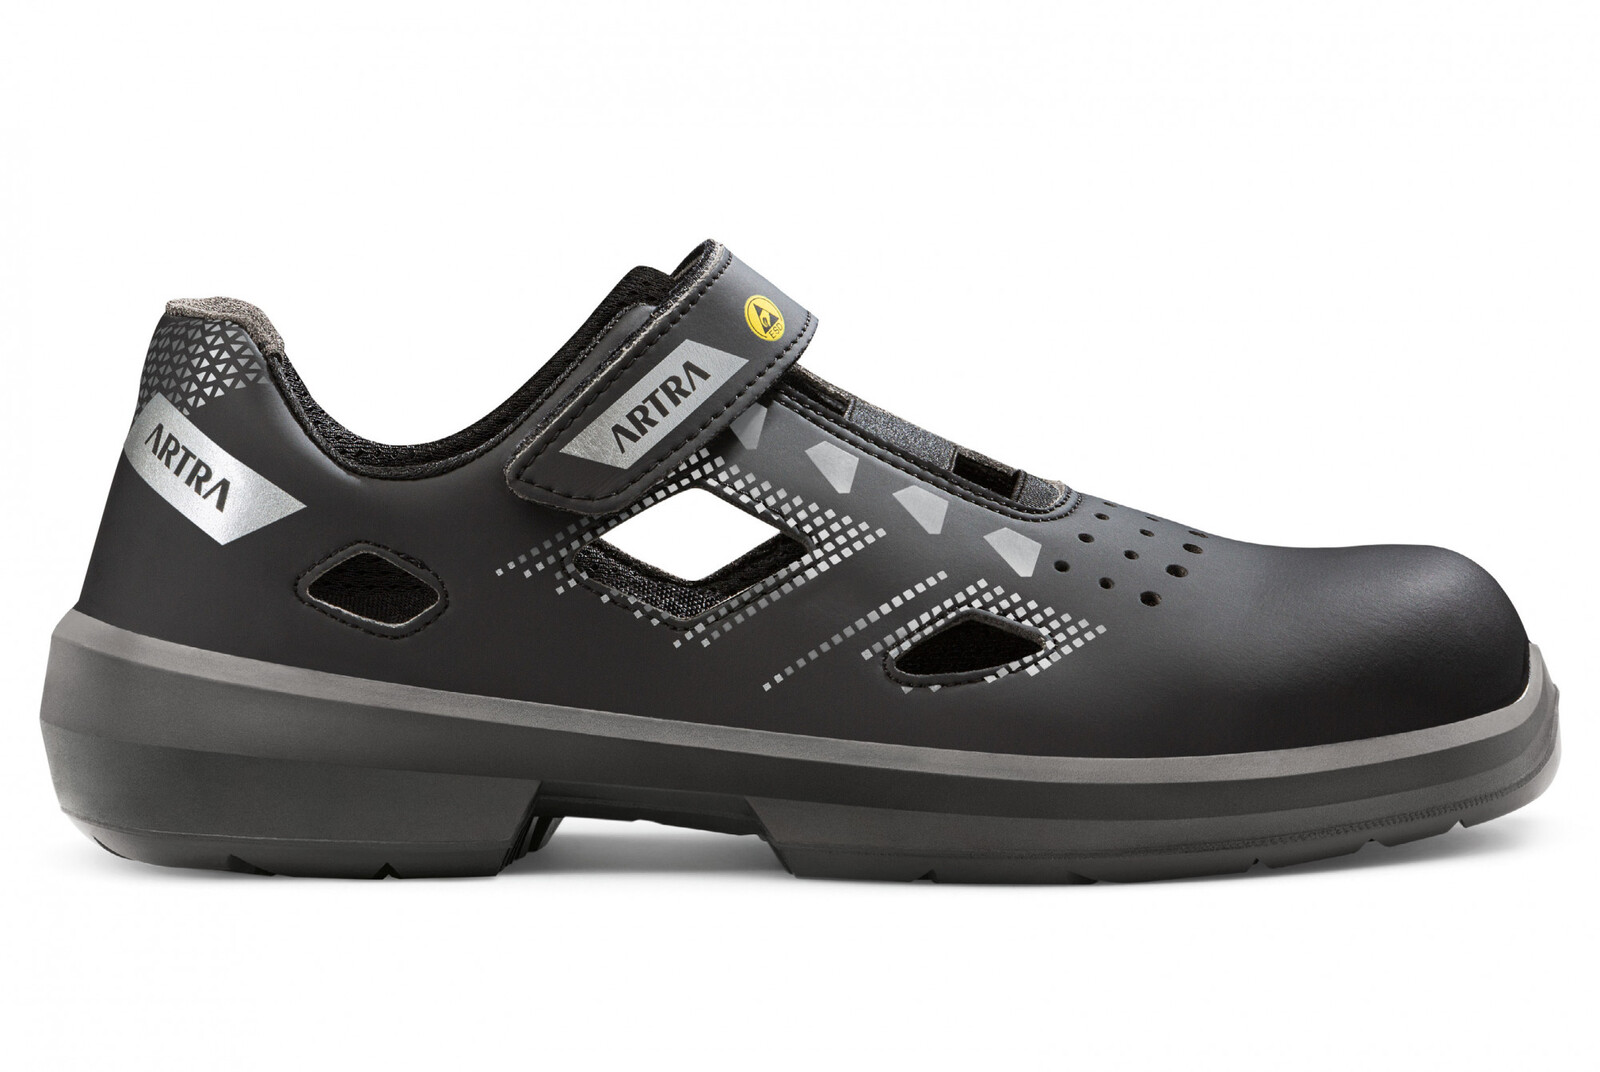 Bezpečnostné sandále Artra Arzo 805 676560 S1P SRC ESD MF - veľkosť: 35, farba: čierna/sivá